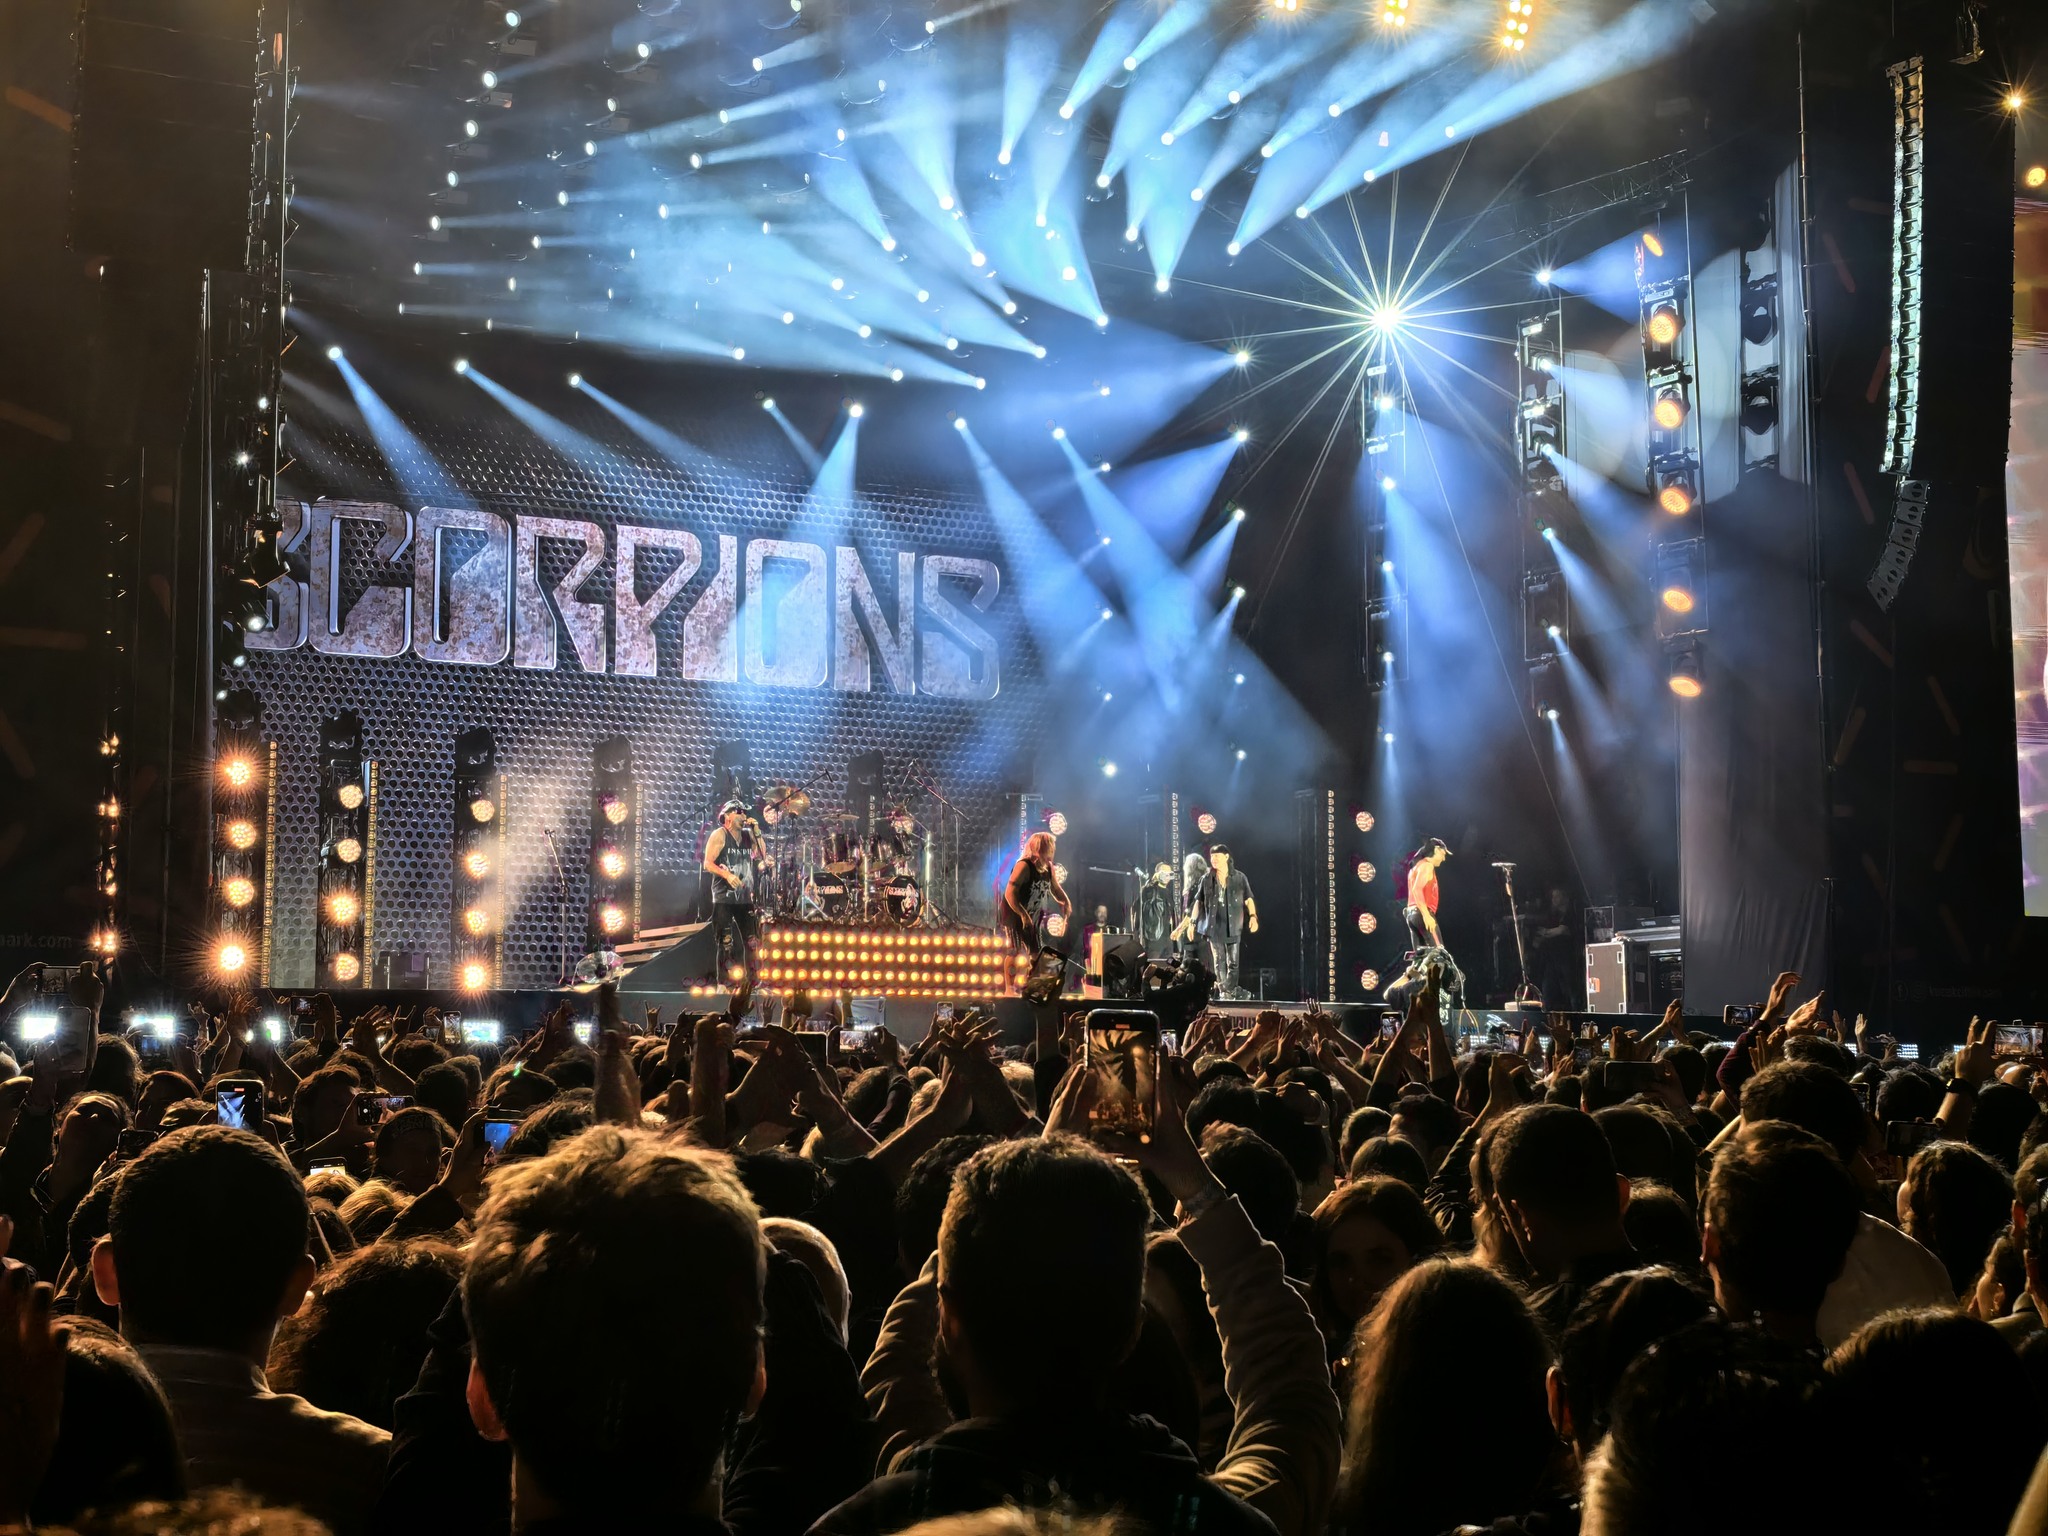 Scorpions konseri muhteşemdi! Huawei Pura70 Ultra ile konserden özel görüntüler